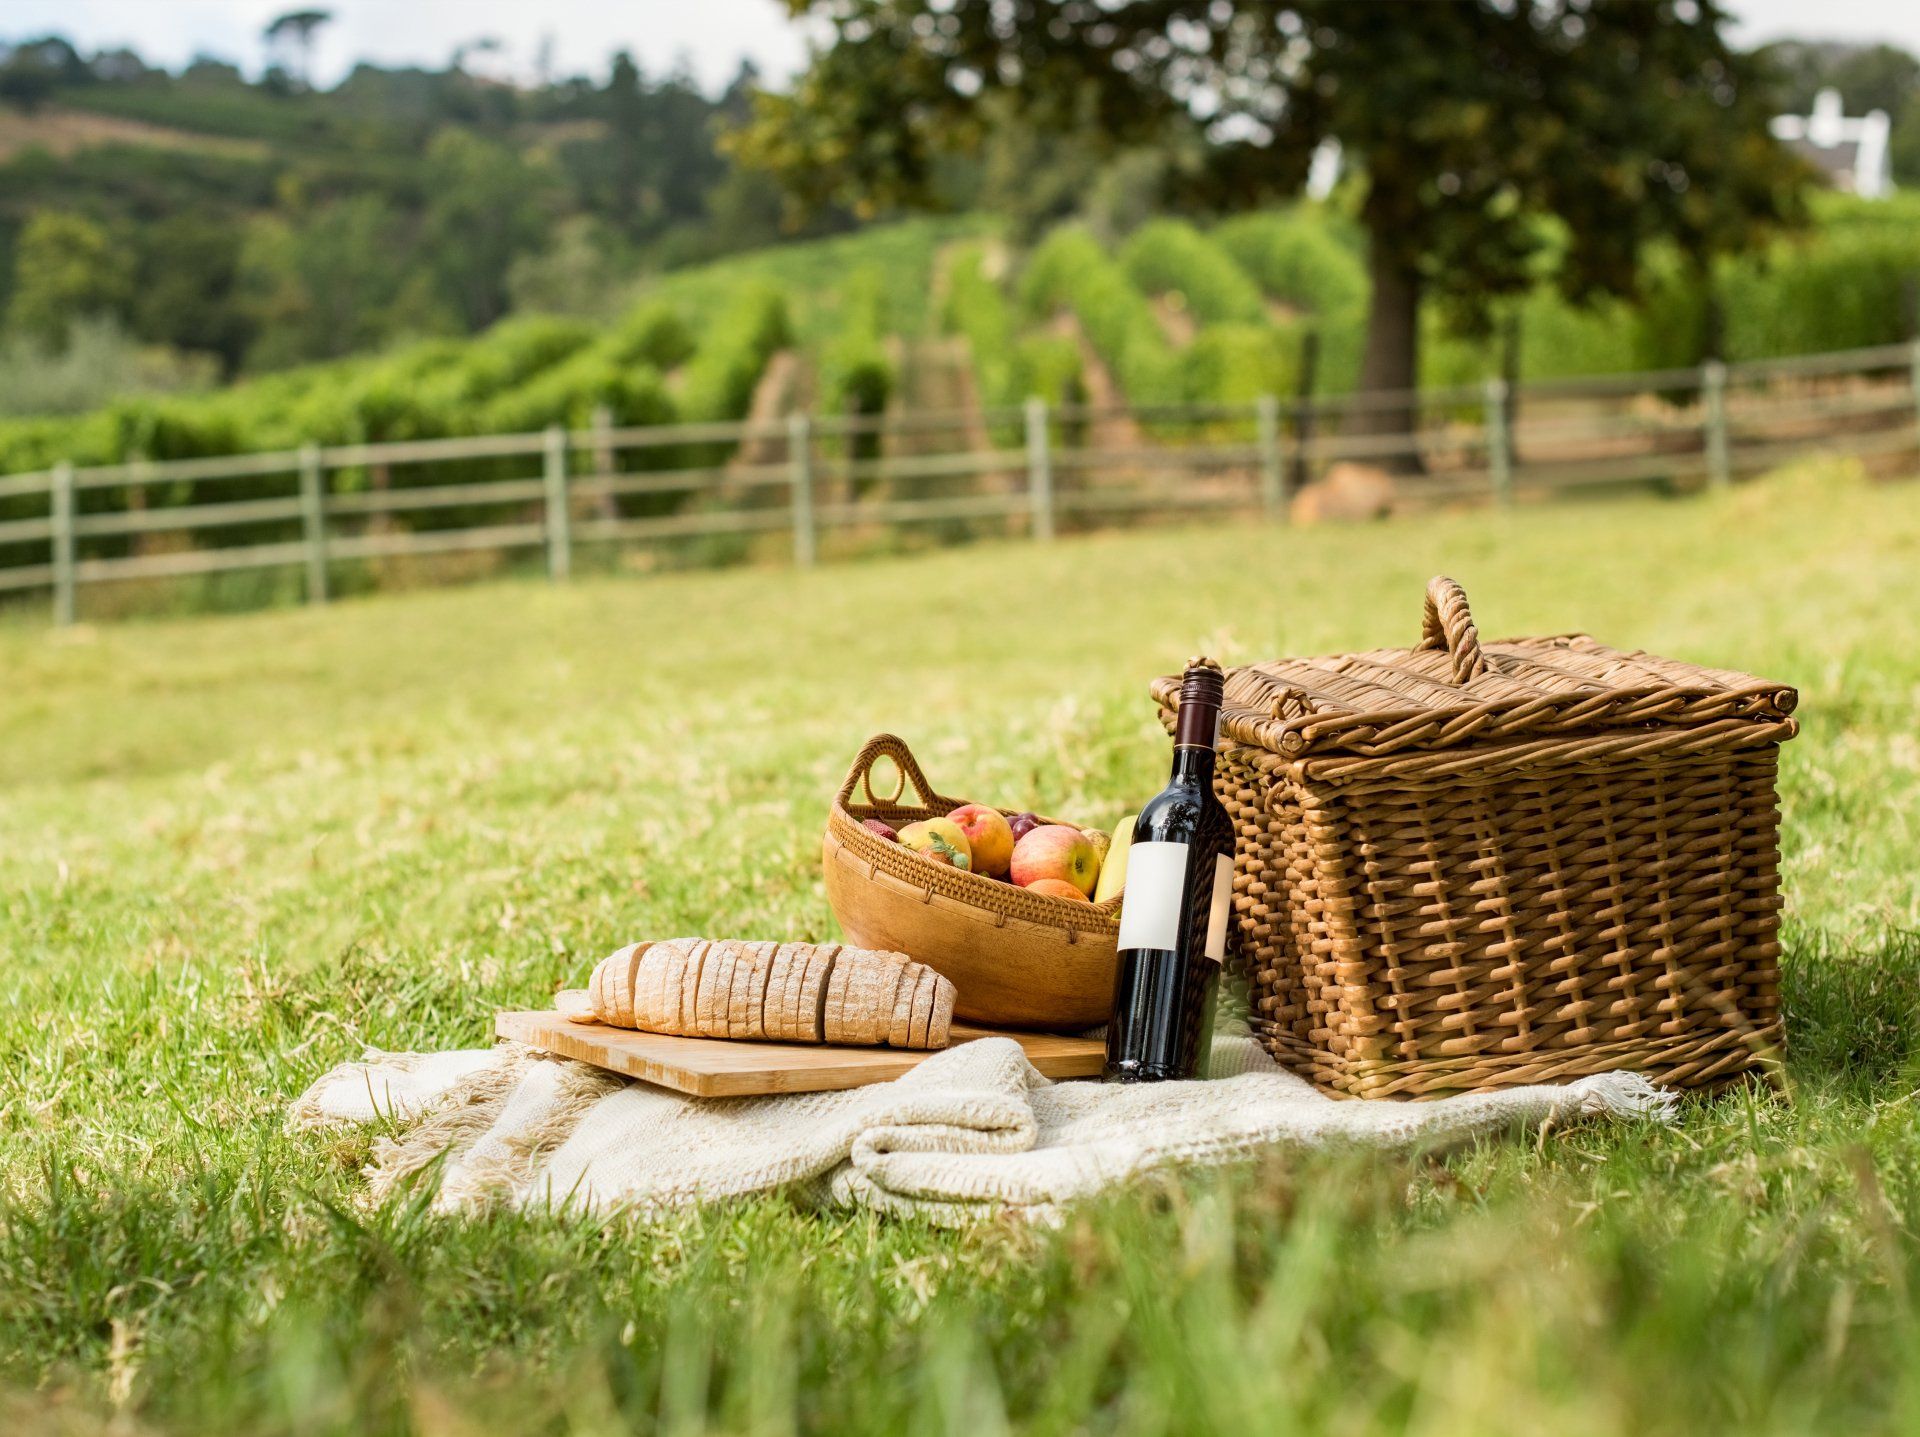 Wonderful picnic in a field